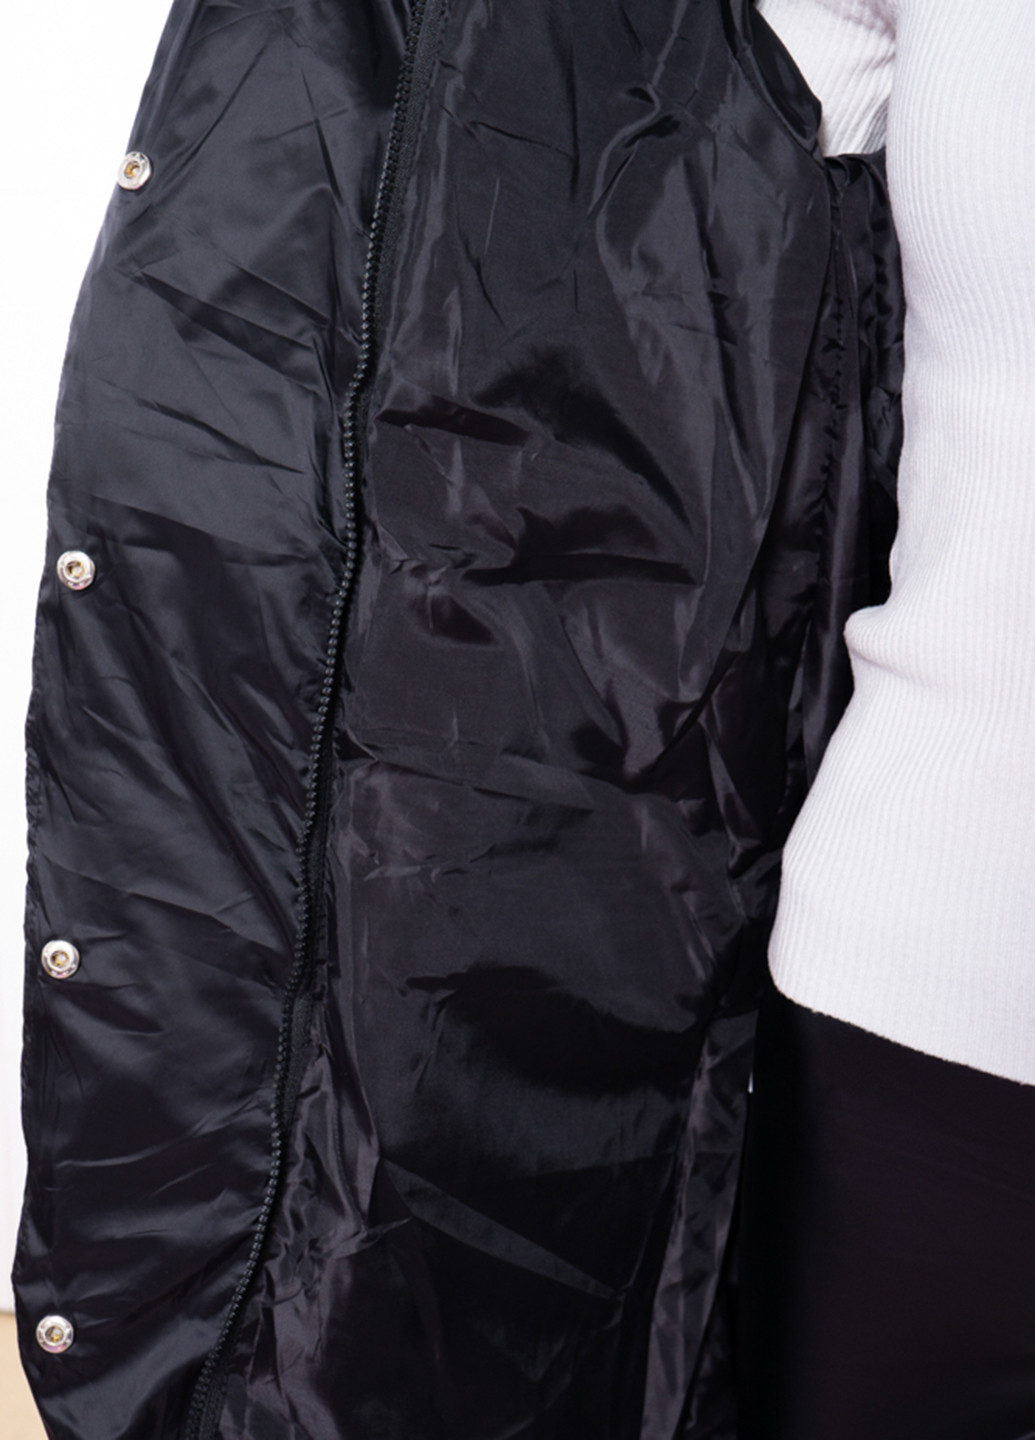 Чорна зимня куртка куртка-ковдра Time of Style